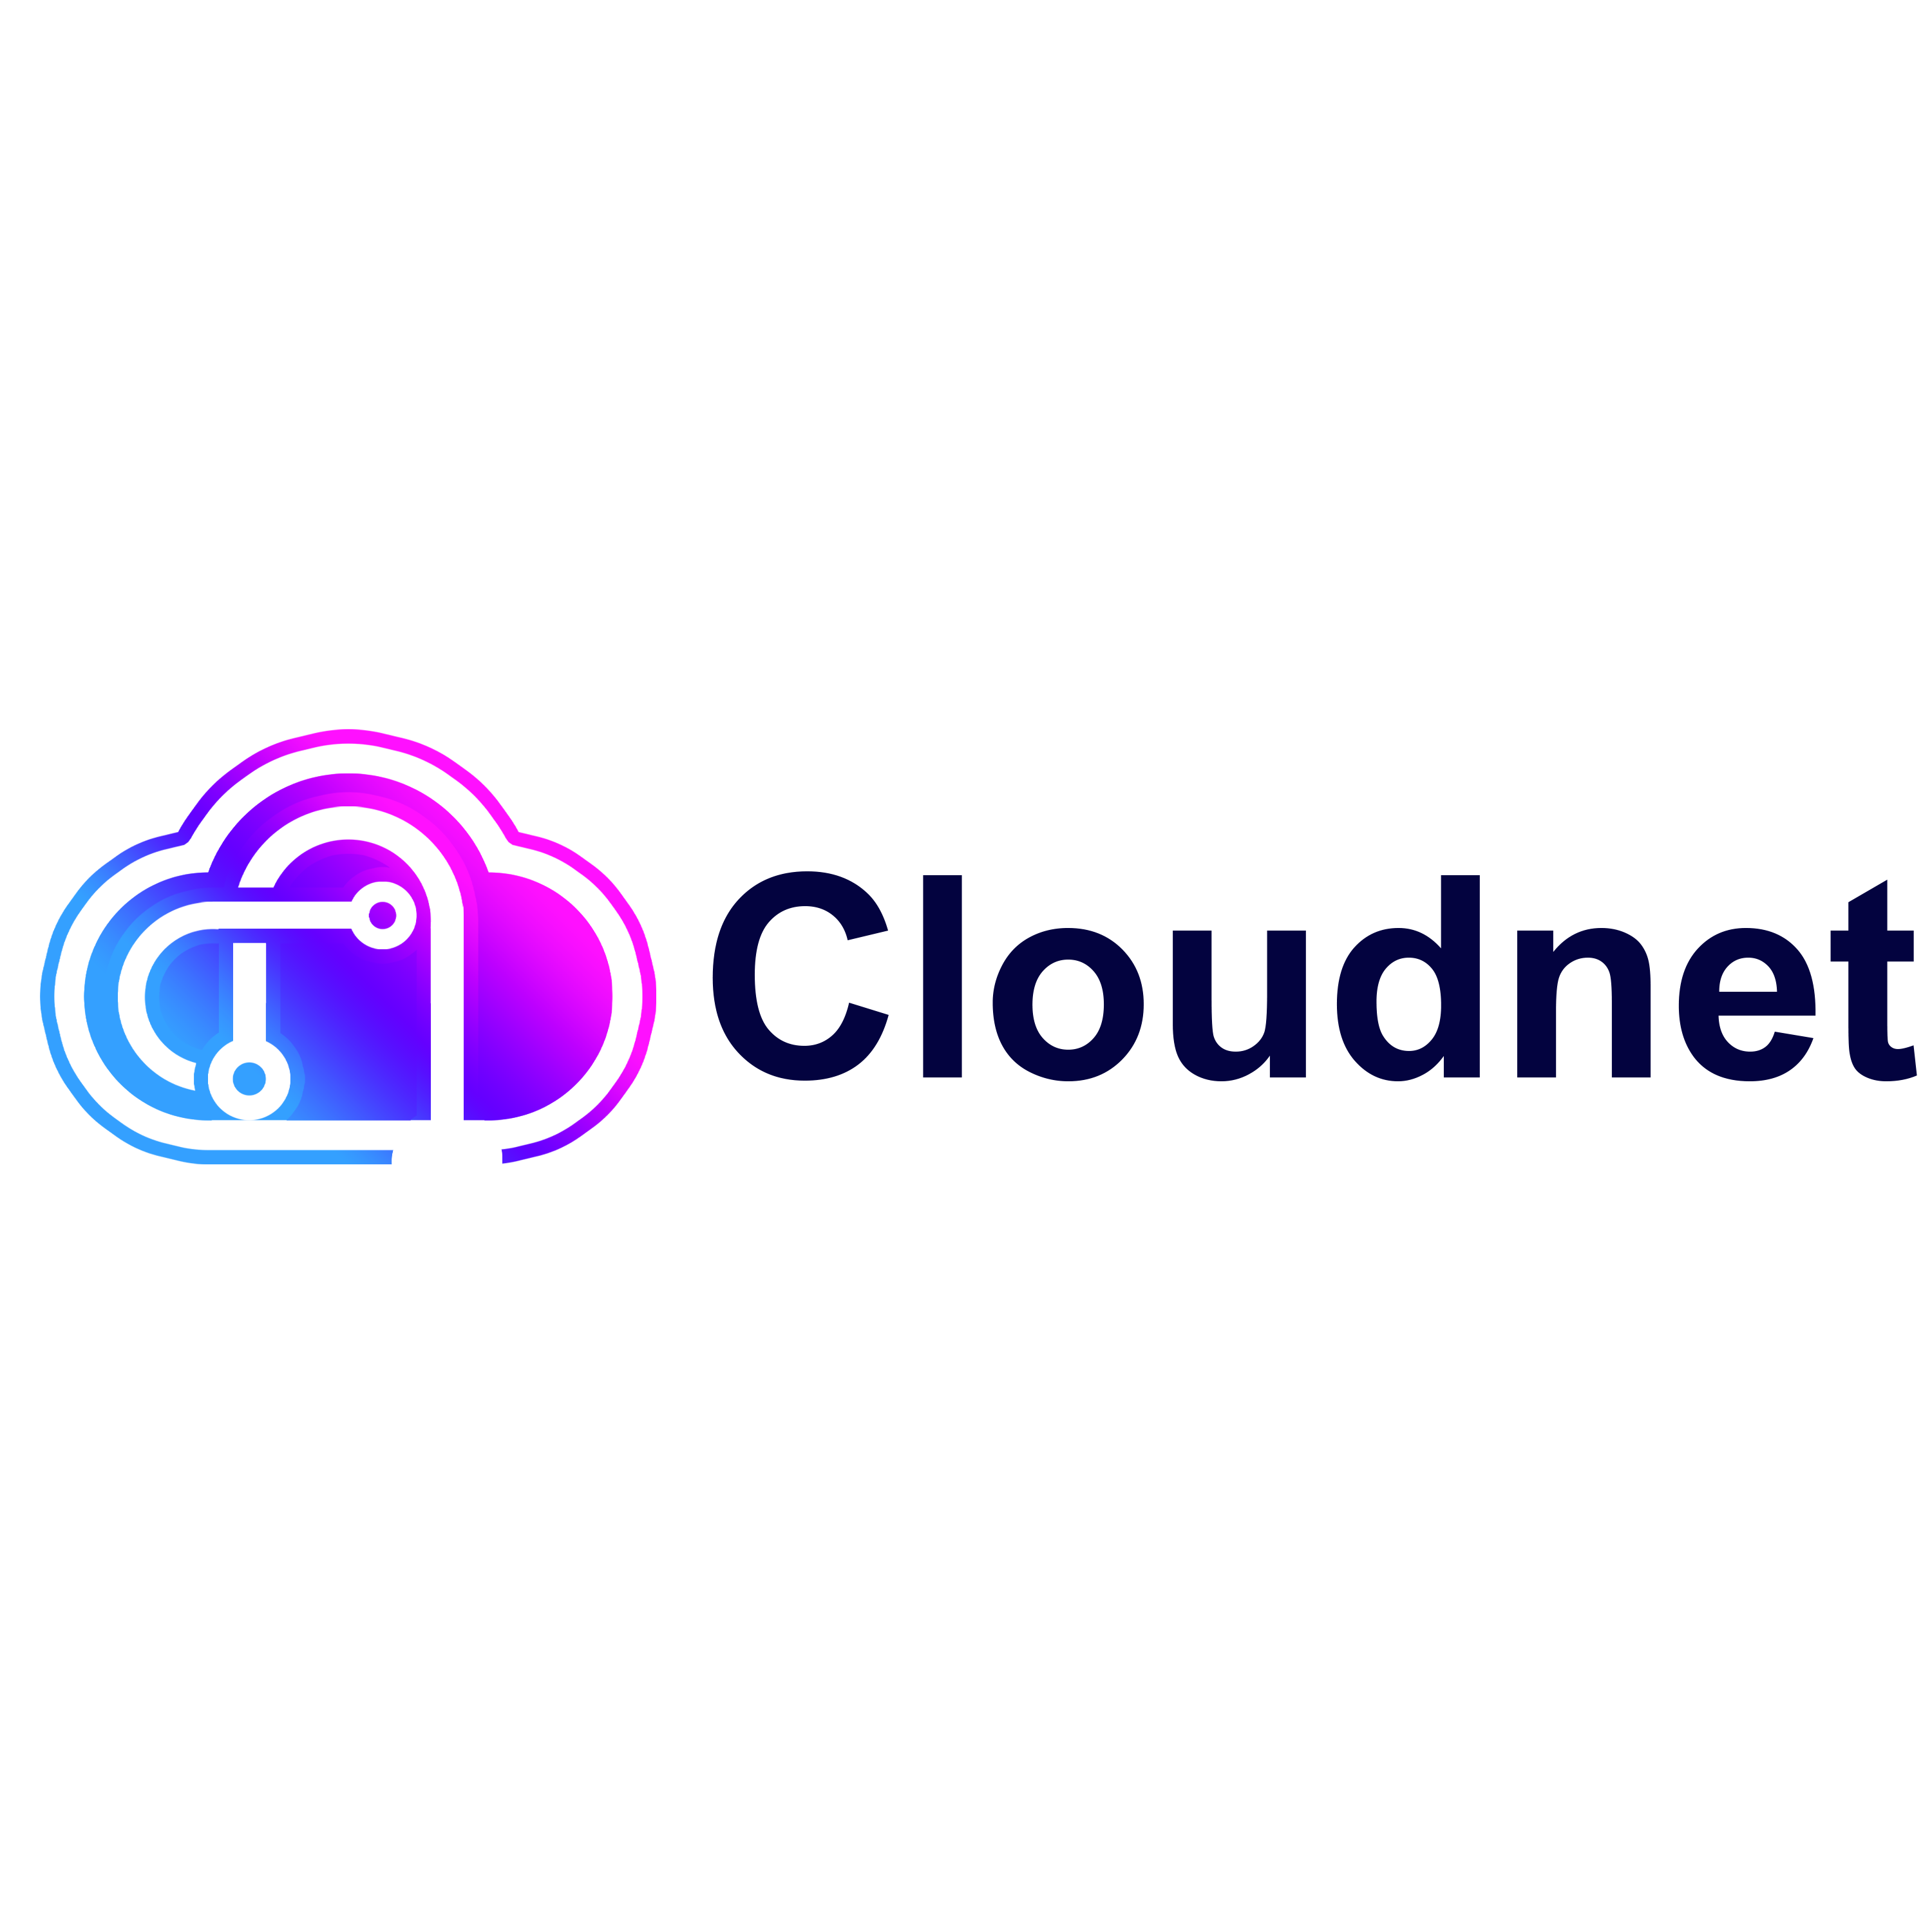 Cloudnet Logo Design Png